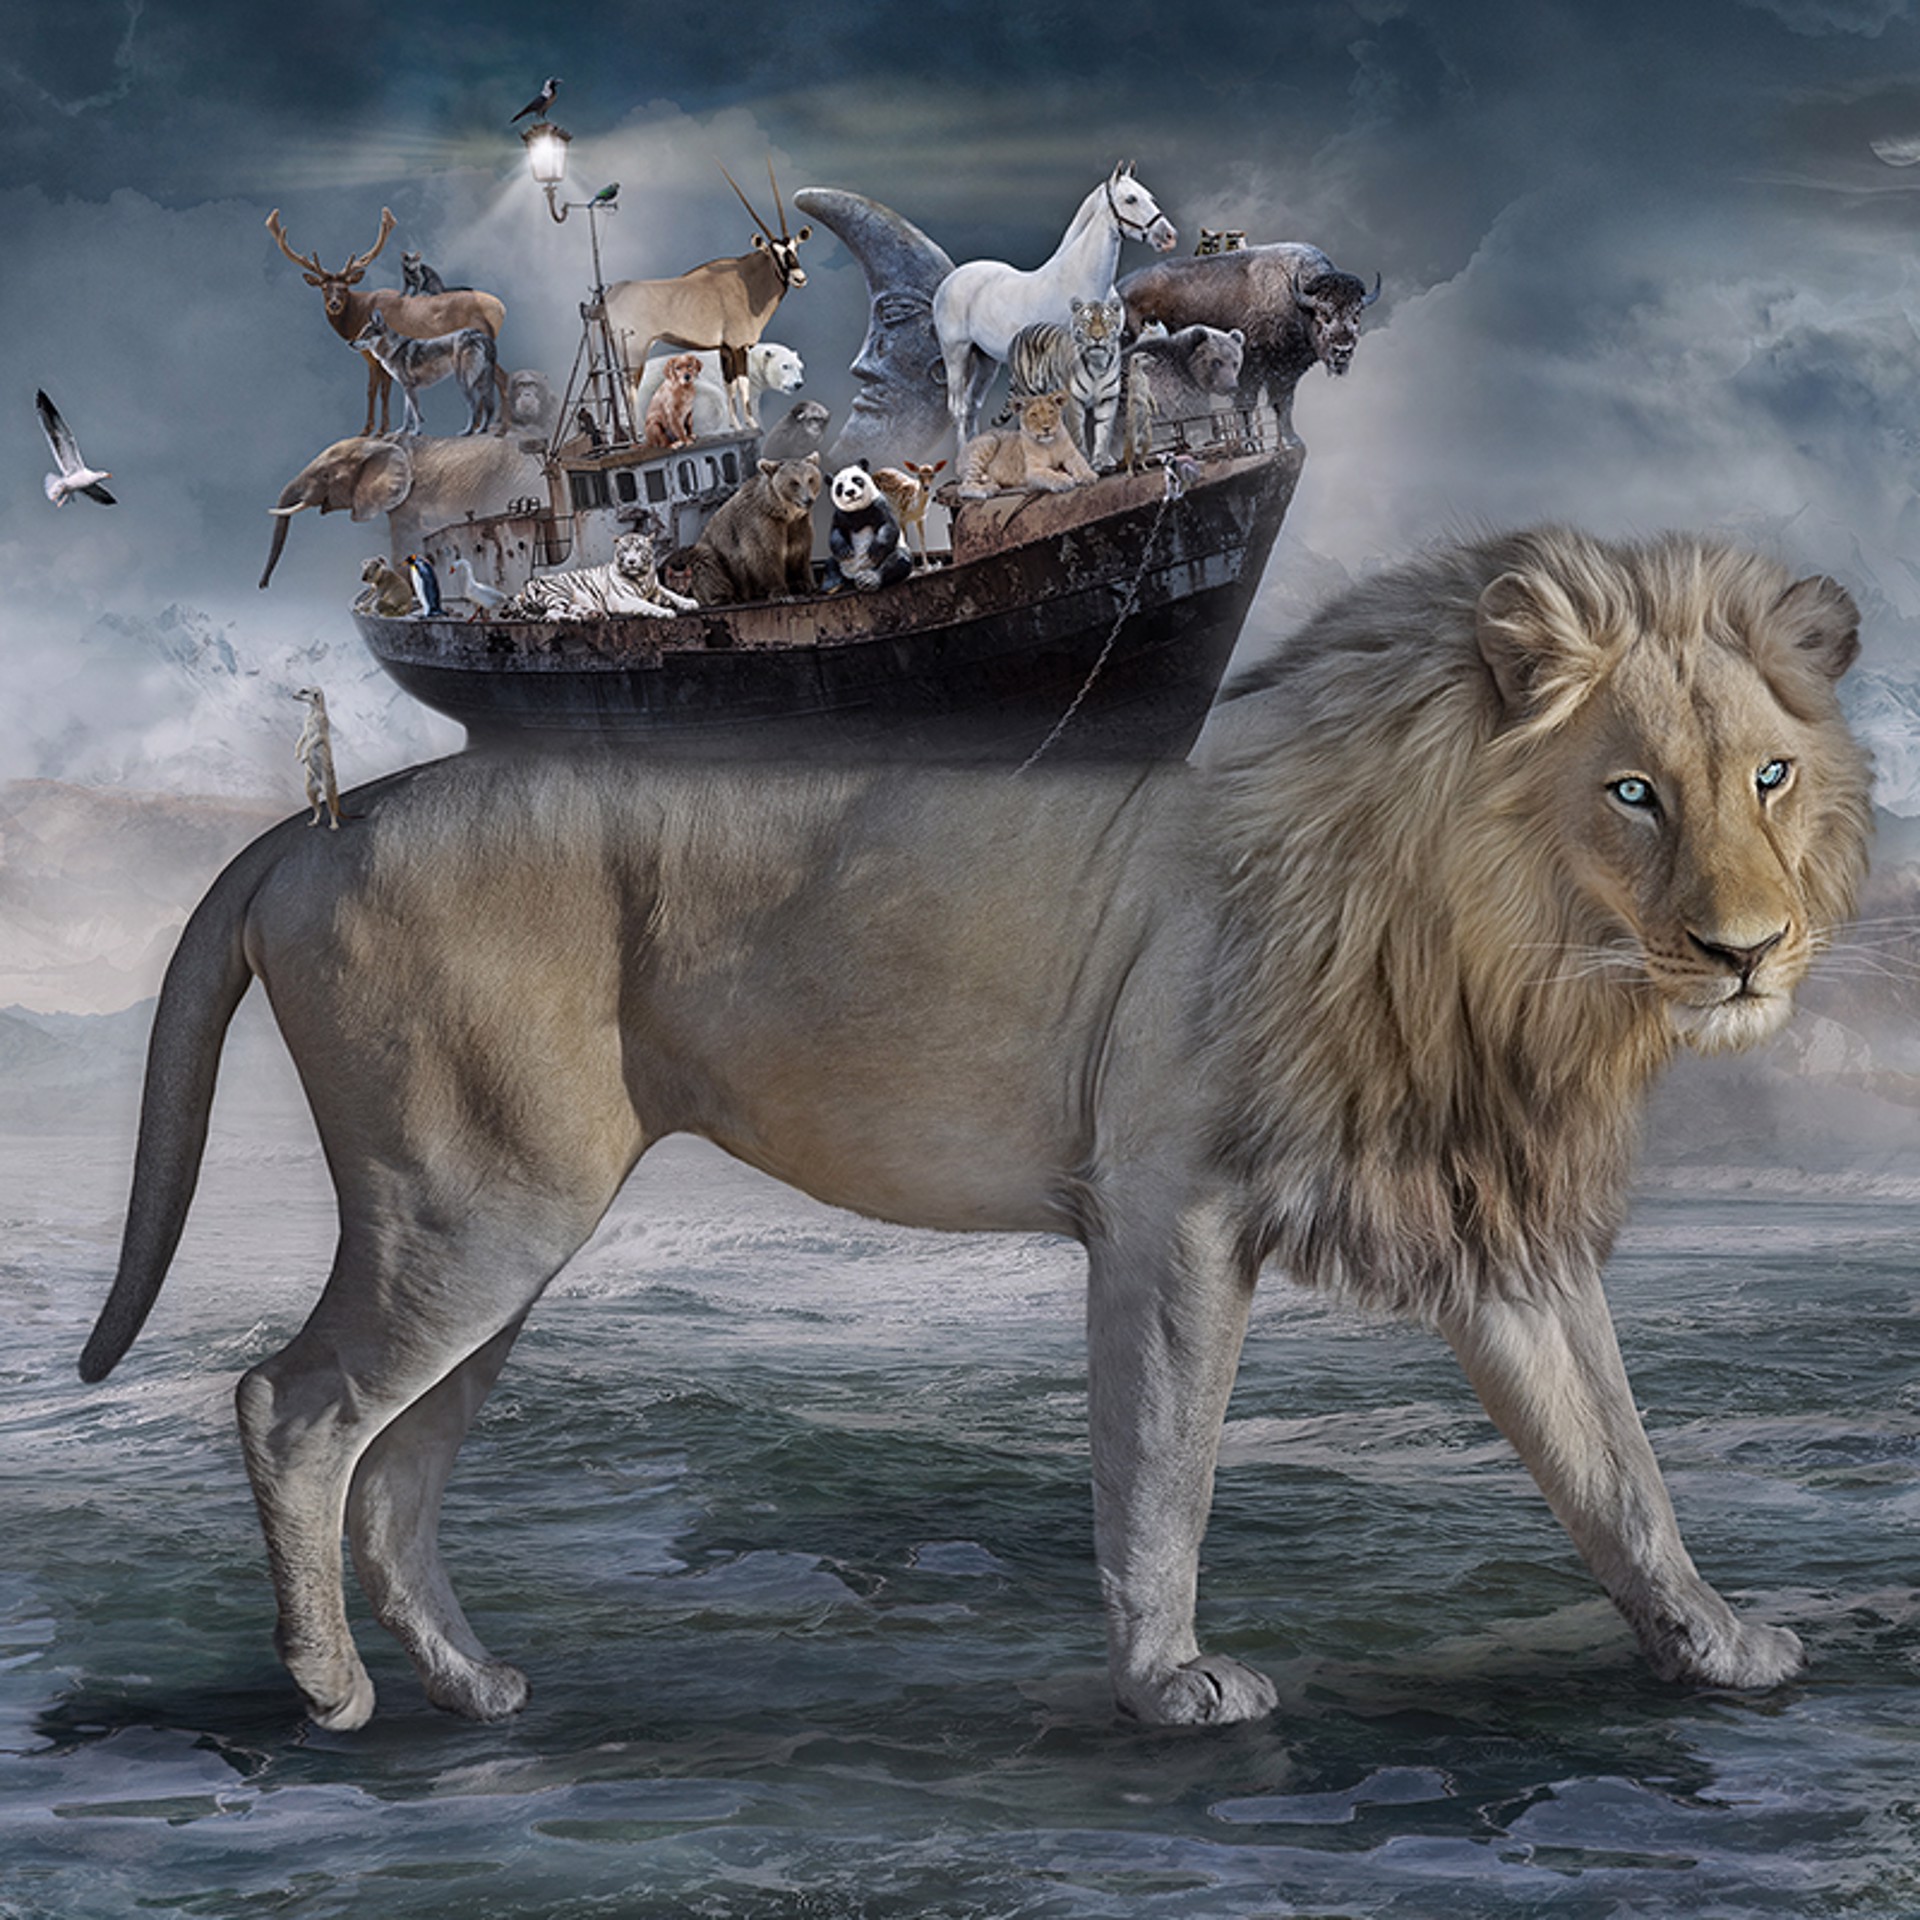 Noah - the Lions Heart by Marcin Owczarek